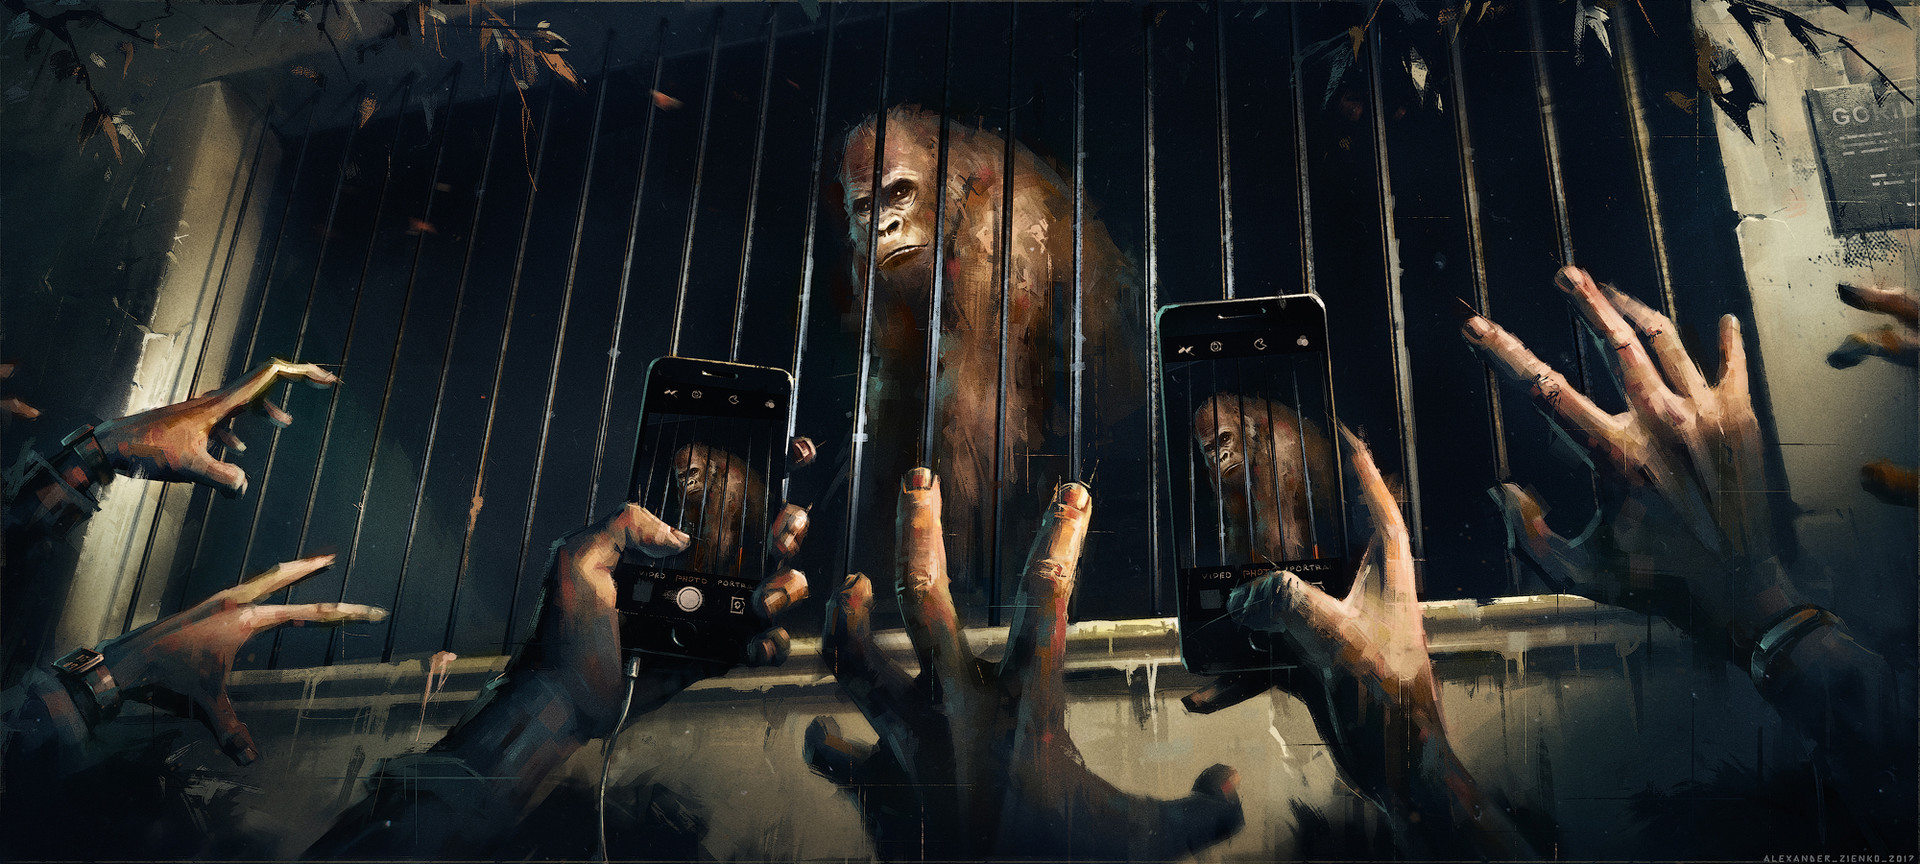 General 1920x864 Alexander Zienko gorillas hands smartphone jail painting